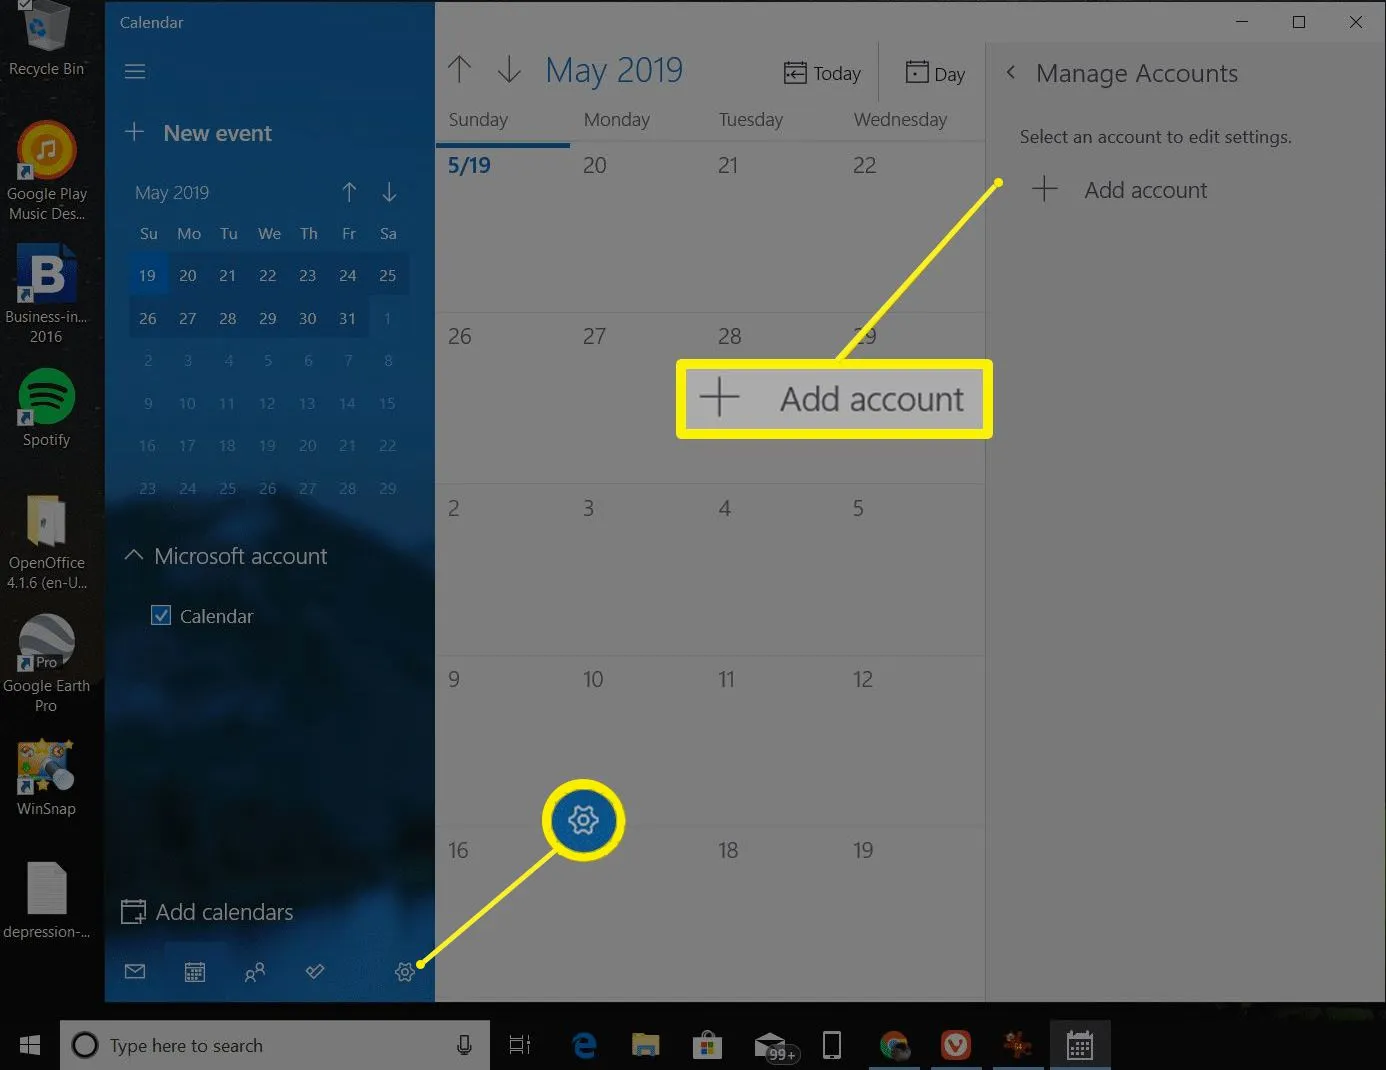 Administrar cuentas en el calendario de Windows